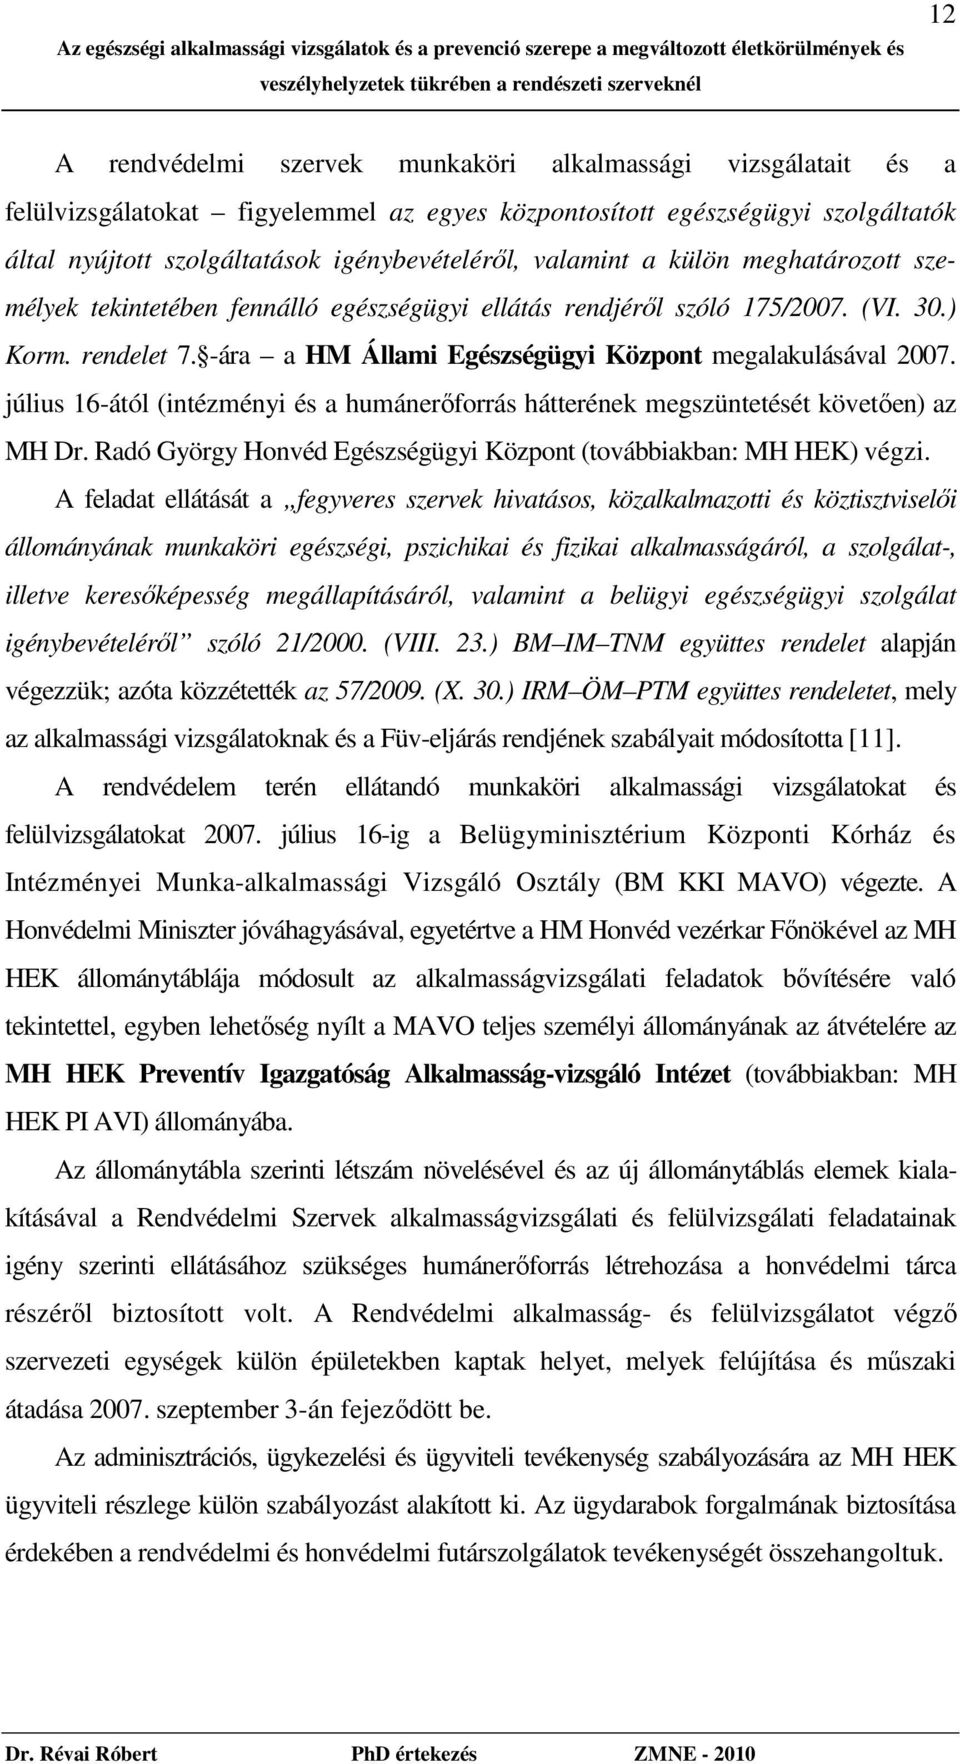 július 16-ától (intézményi és a humánerıforrás hátterének megszüntetését követıen) az MH Dr. Radó György Honvéd Egészségügyi Központ (továbbiakban: MH HEK) végzi.